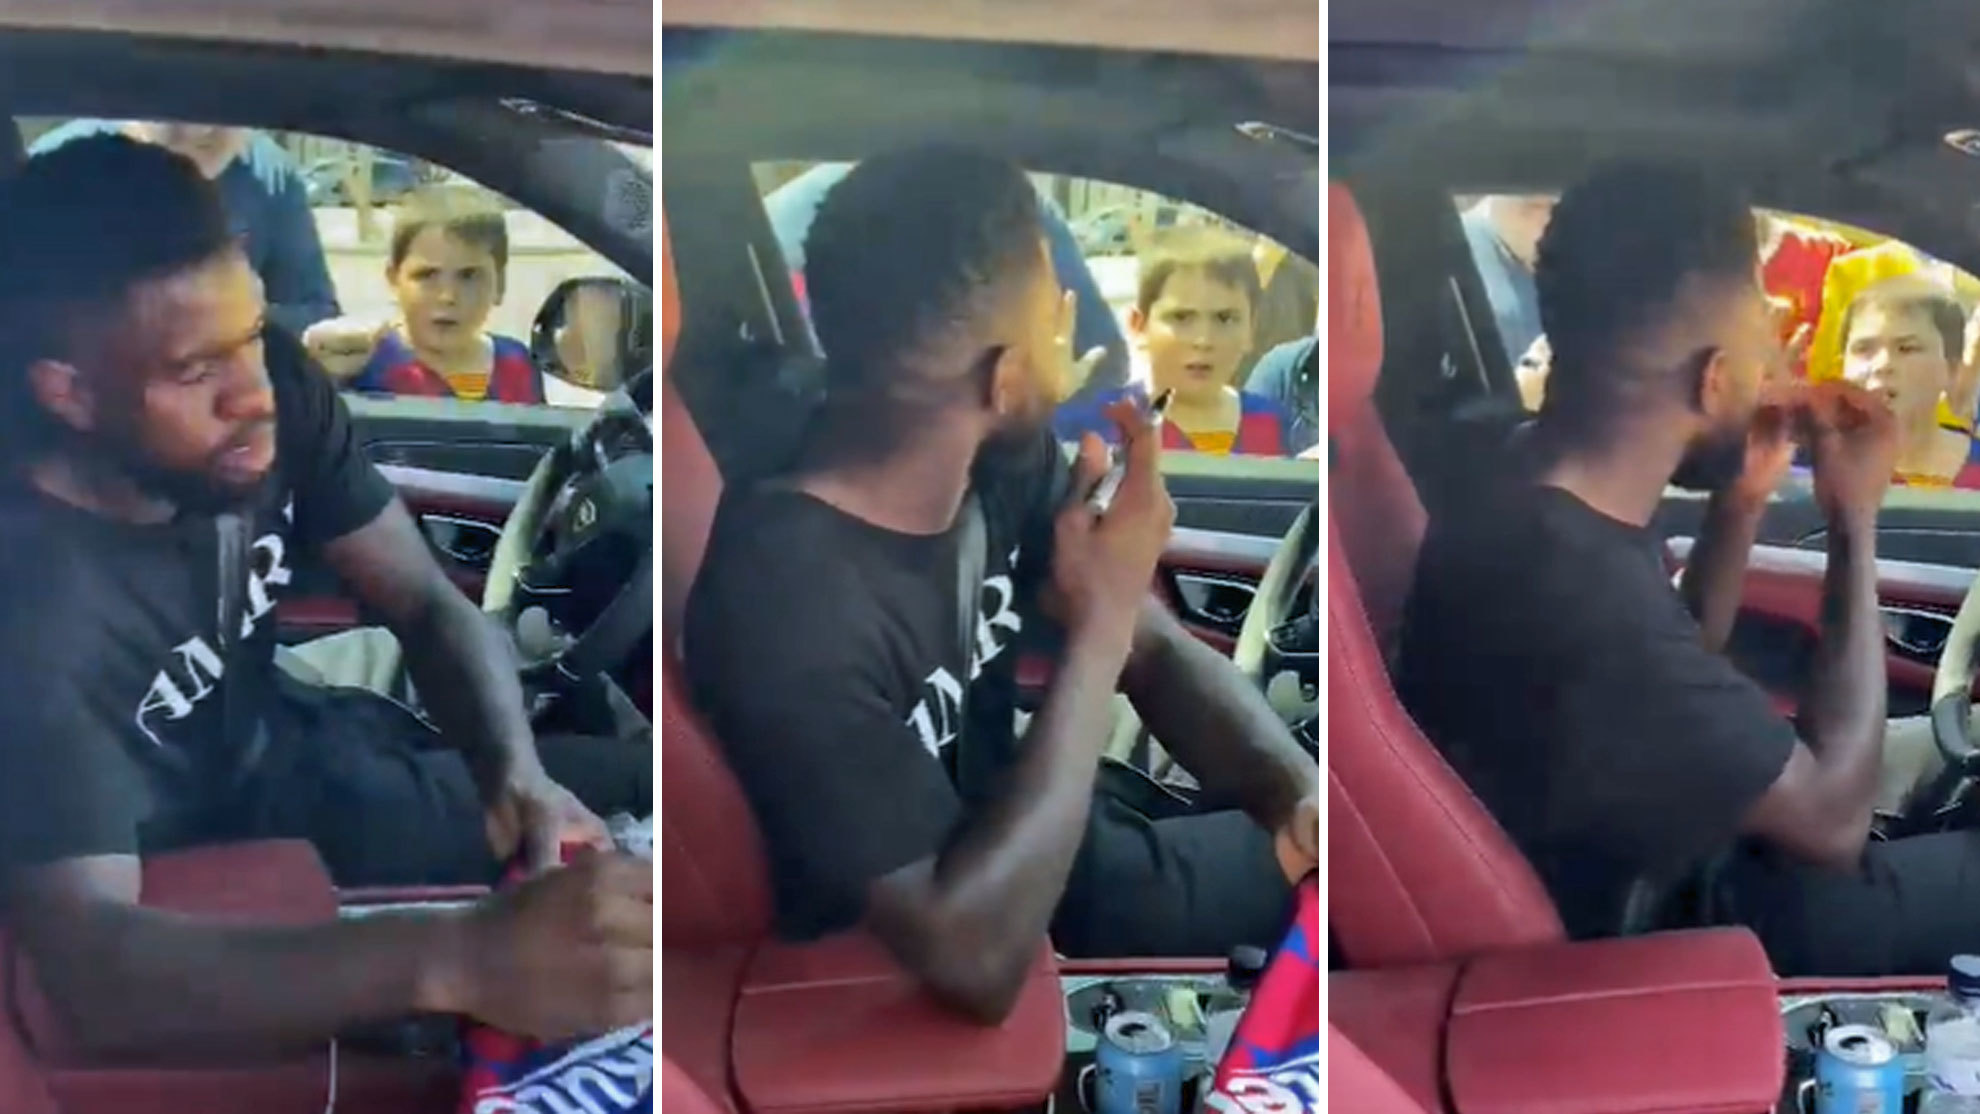 ¿Le faltó paciencia a Umtiti con este niño?: "Ya te veo, no toques el coche"